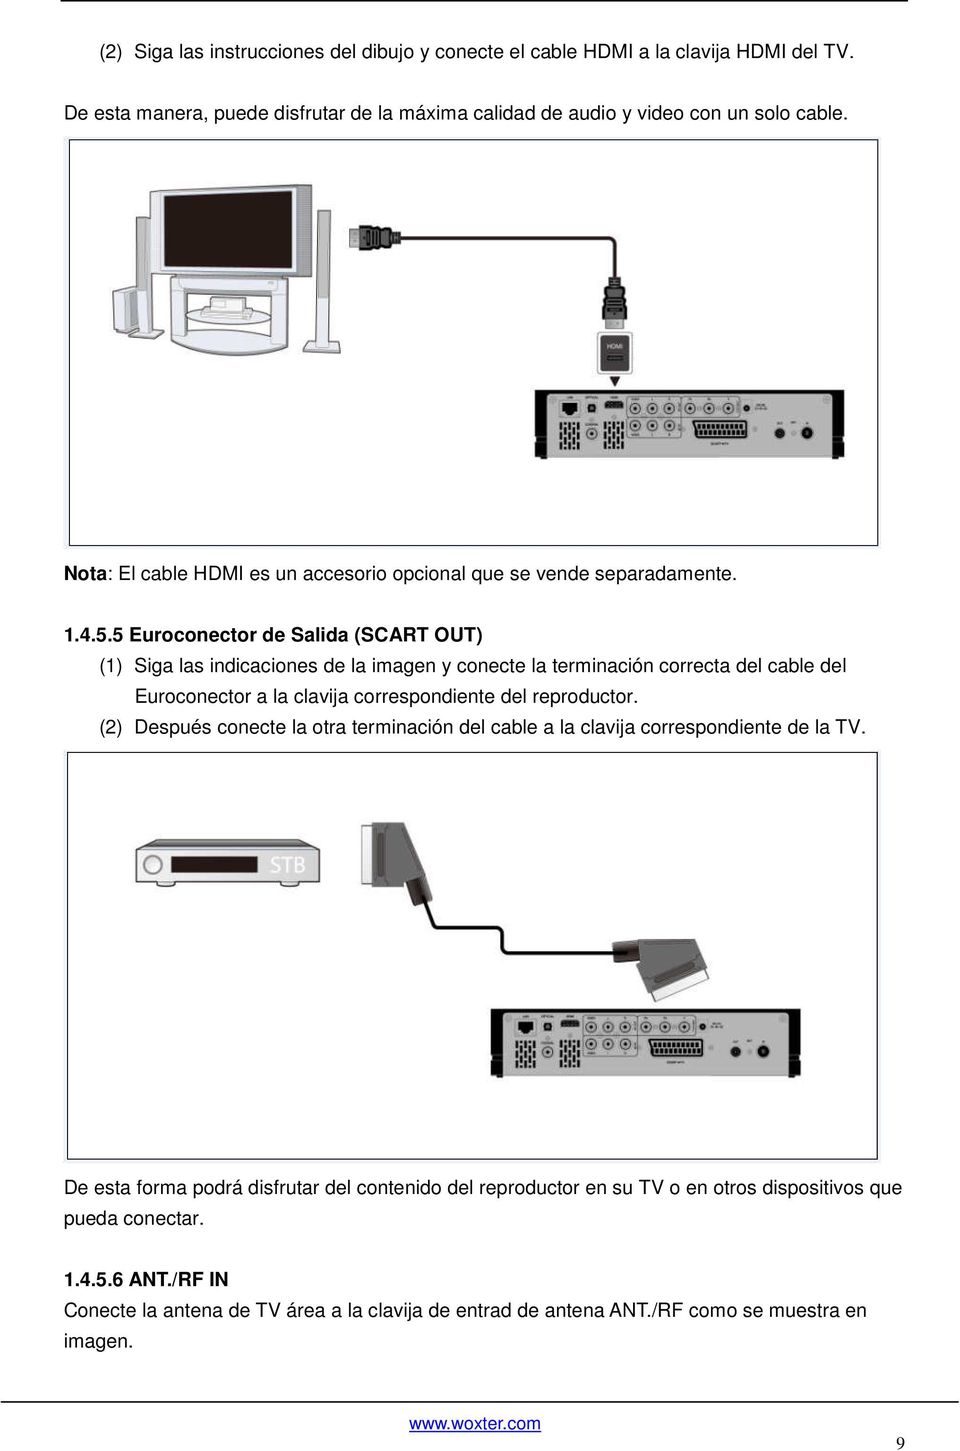 5 Euroconector de Salida (SCART OUT) (1) Siga las indicaciones de la imagen y conecte la terminación correcta del cable del Euroconector a la clavija correspondiente del reproductor.